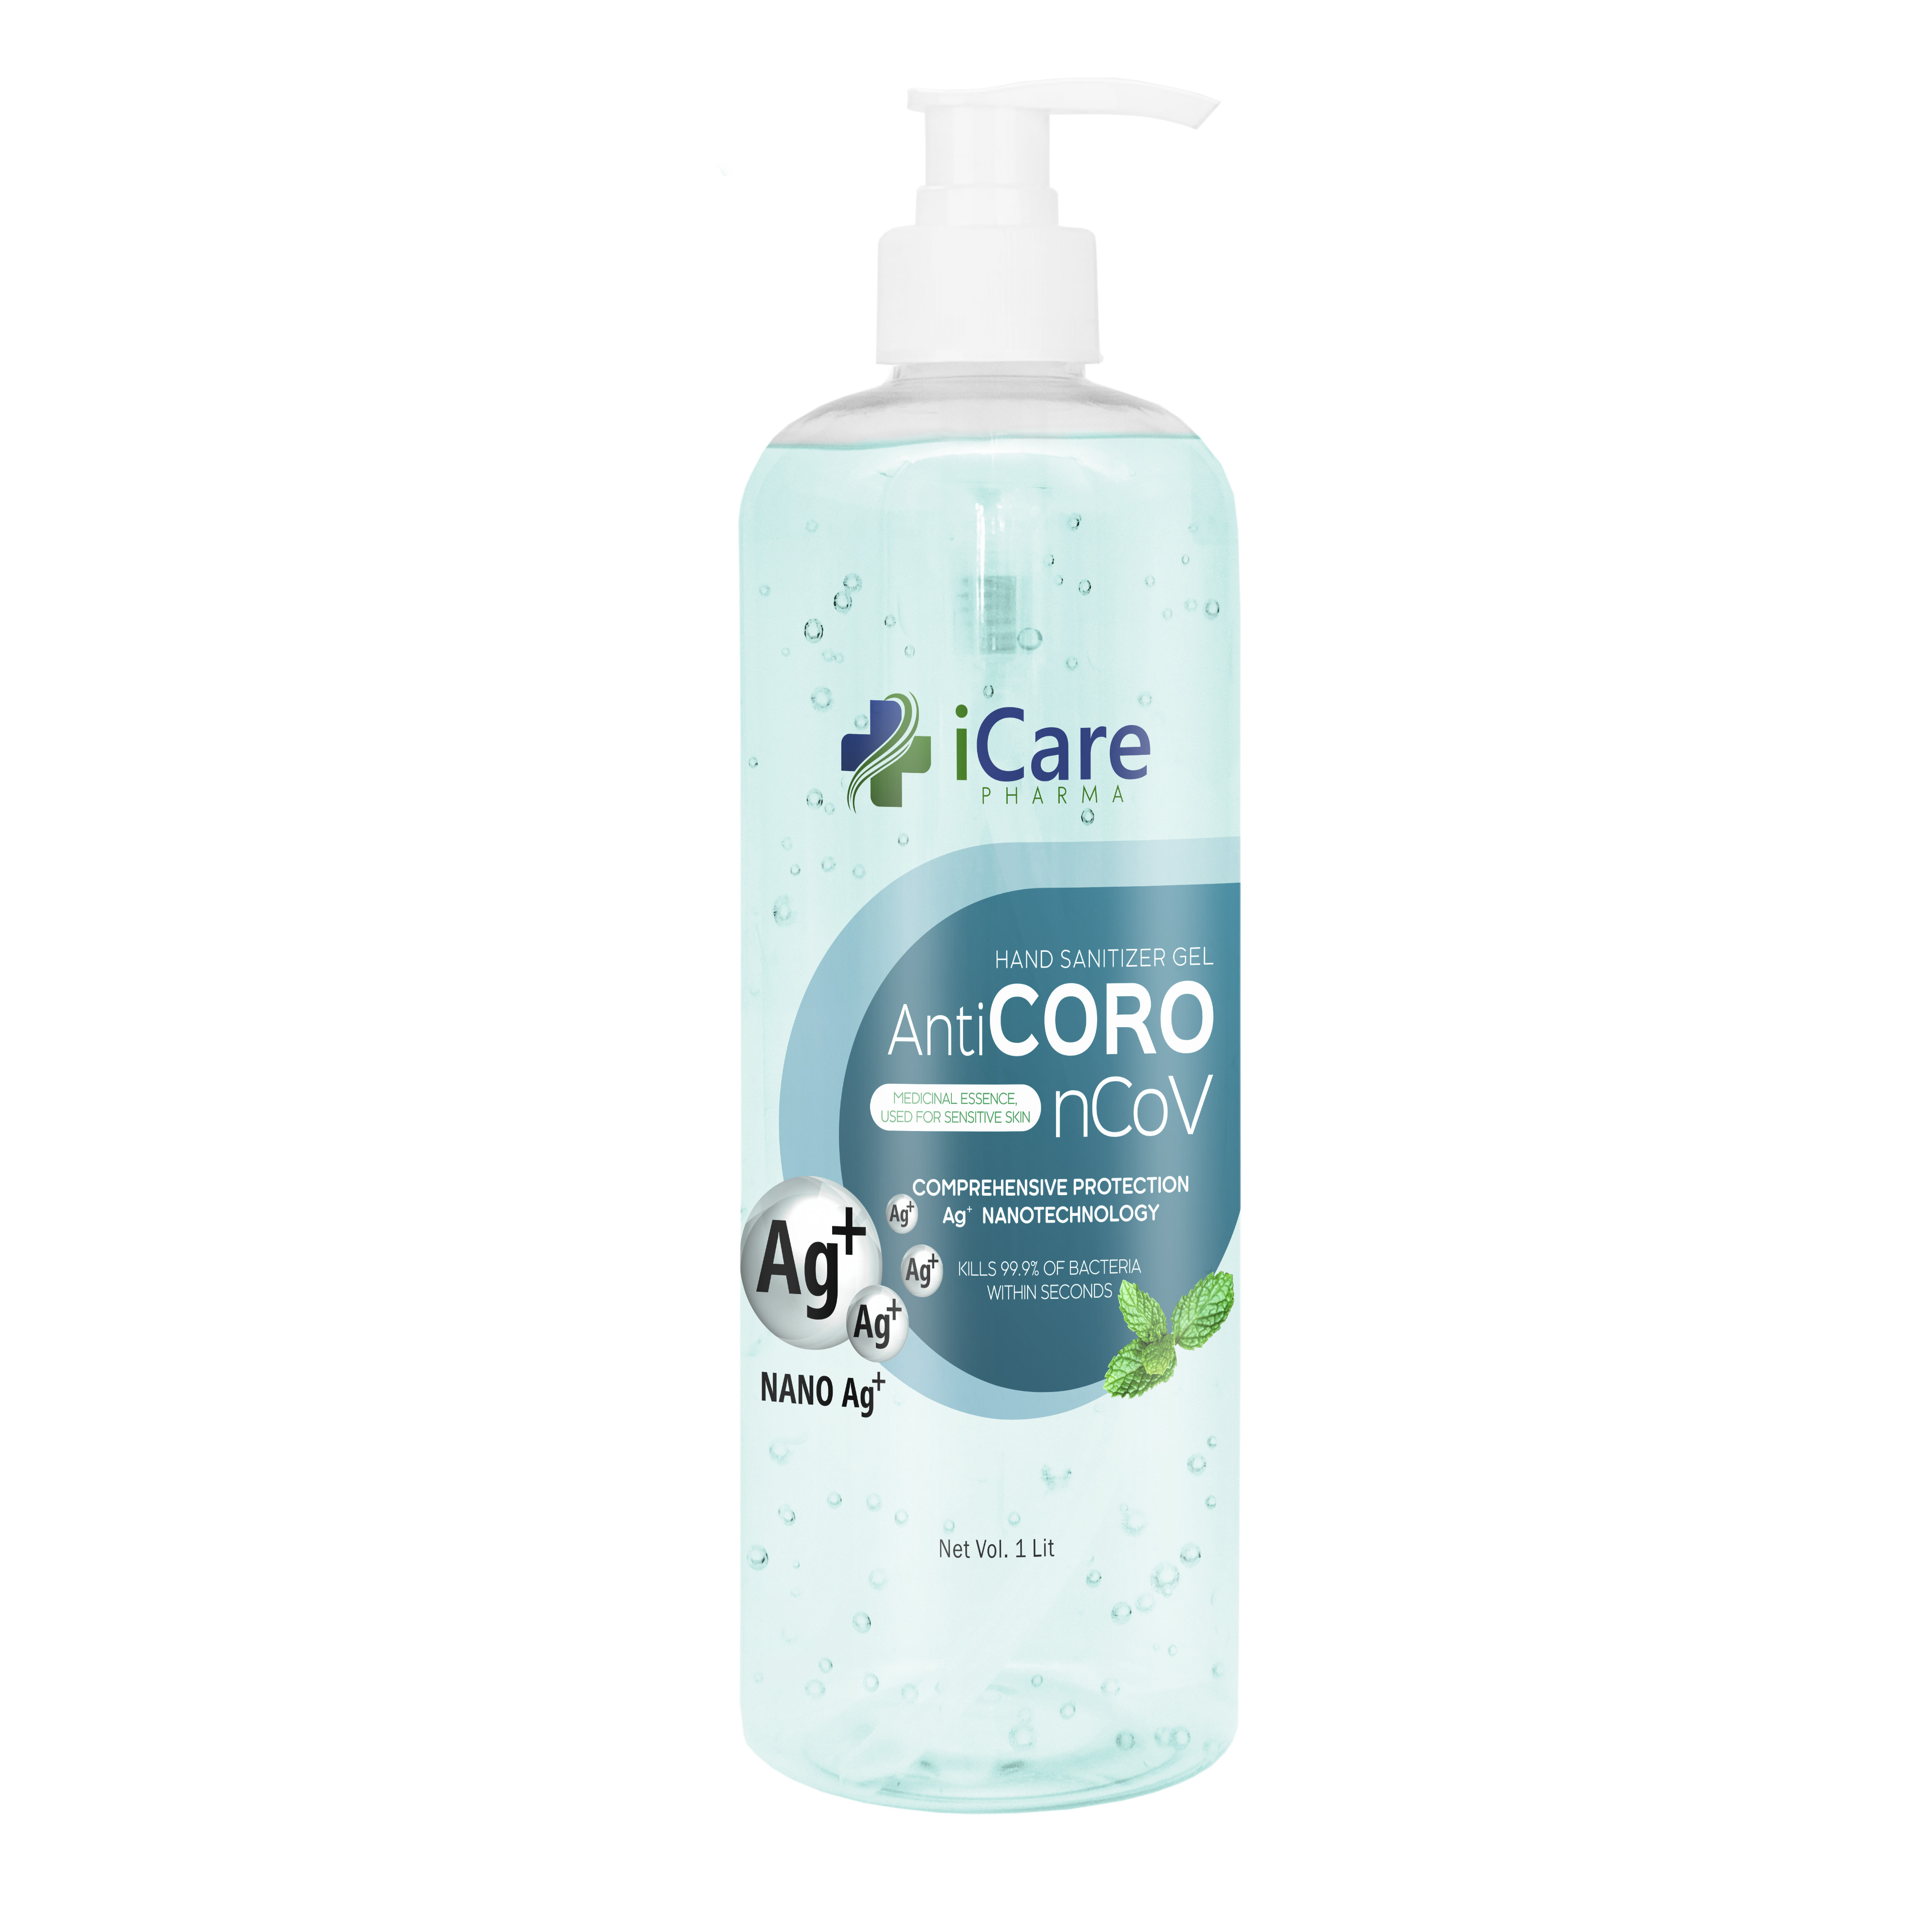 Gel rửa tay khô AntiCoro - Thương hiệu iCare Pharma - Bạc Hà - Chai 1 lít